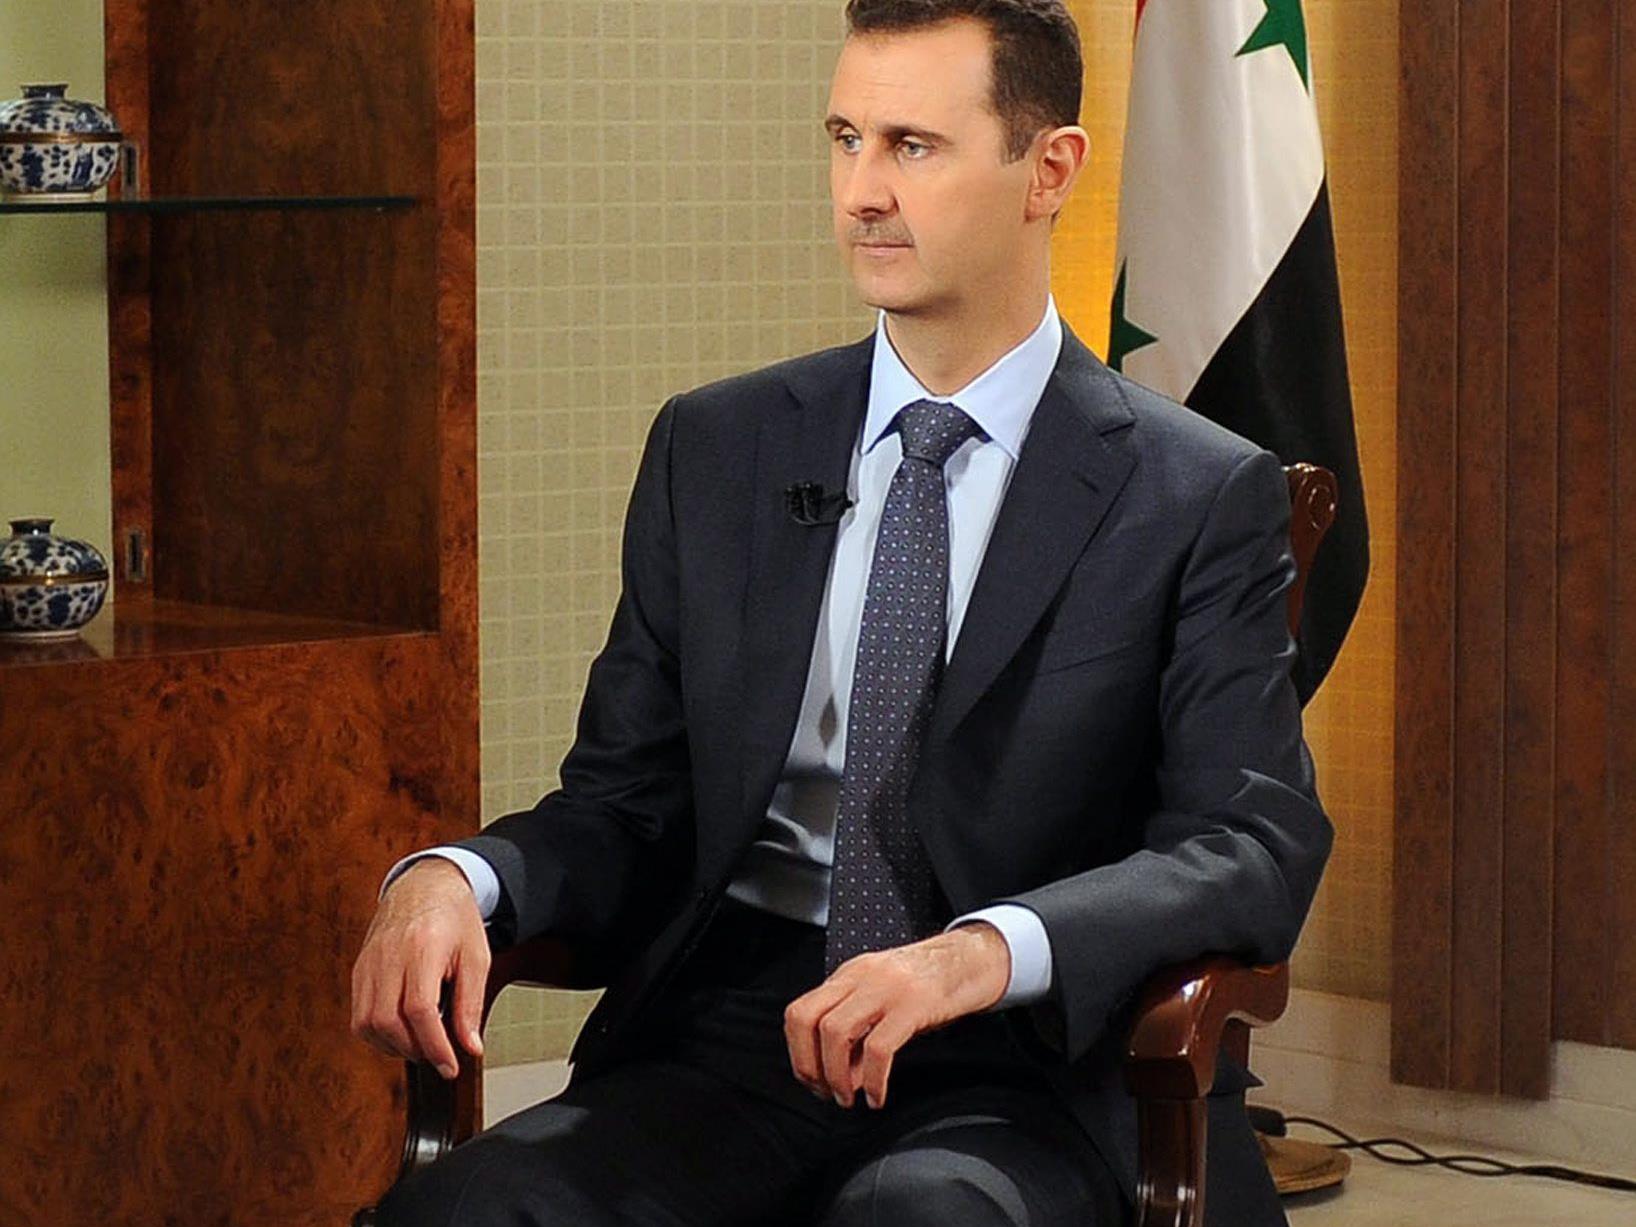 Assad gibt sich von den Forderungen des Auslandes unbeeindruckt.